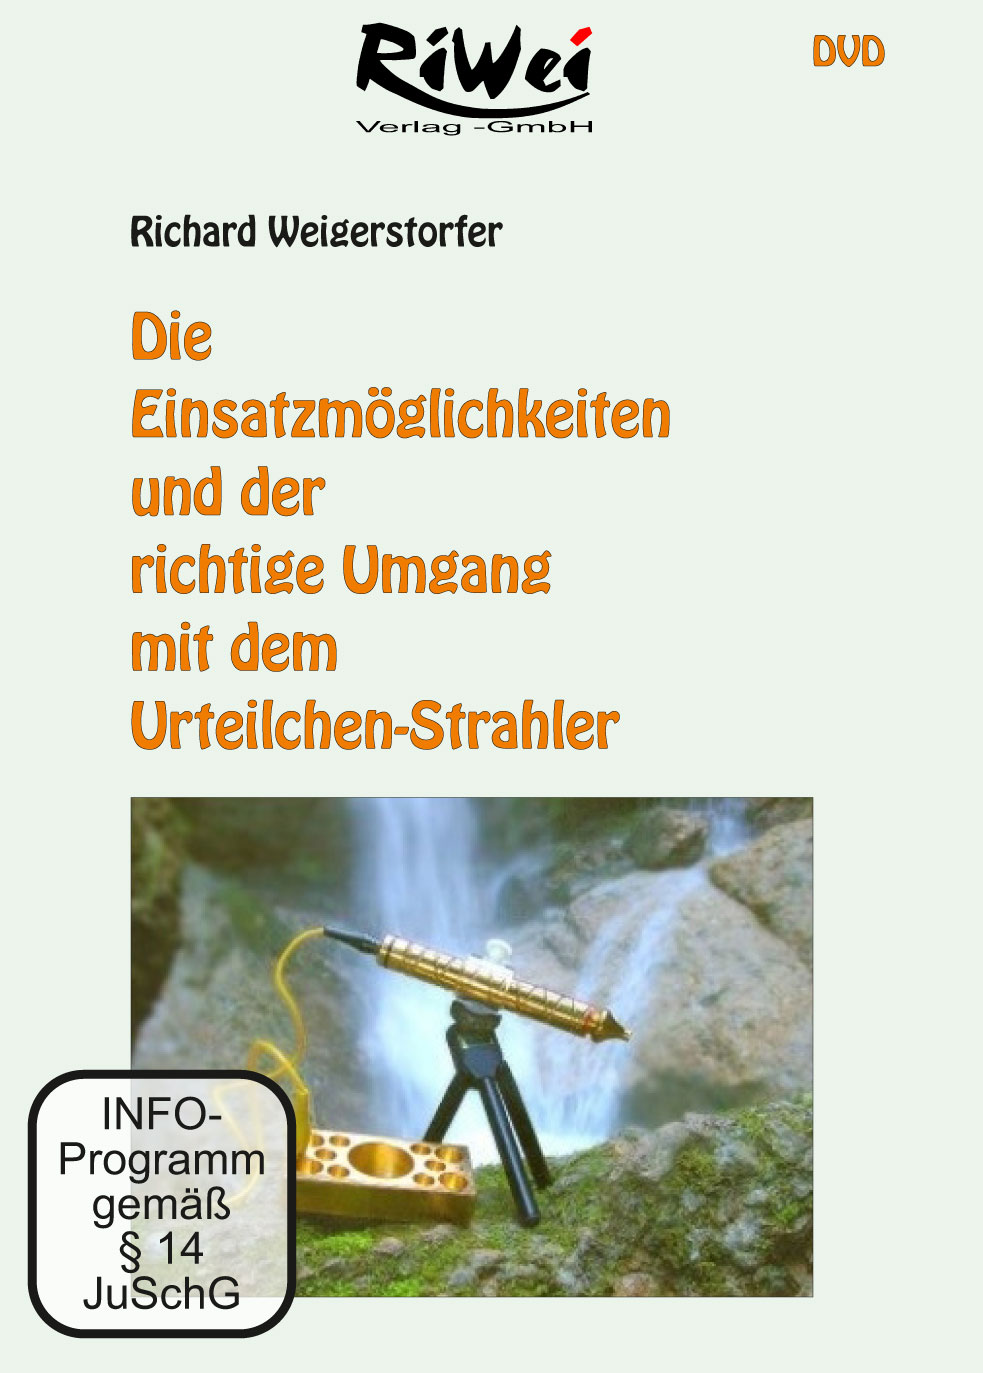 Richard Weigerstorfer - Einsatzmöglichkeiten des Urteilchen Strahlers - Film Download